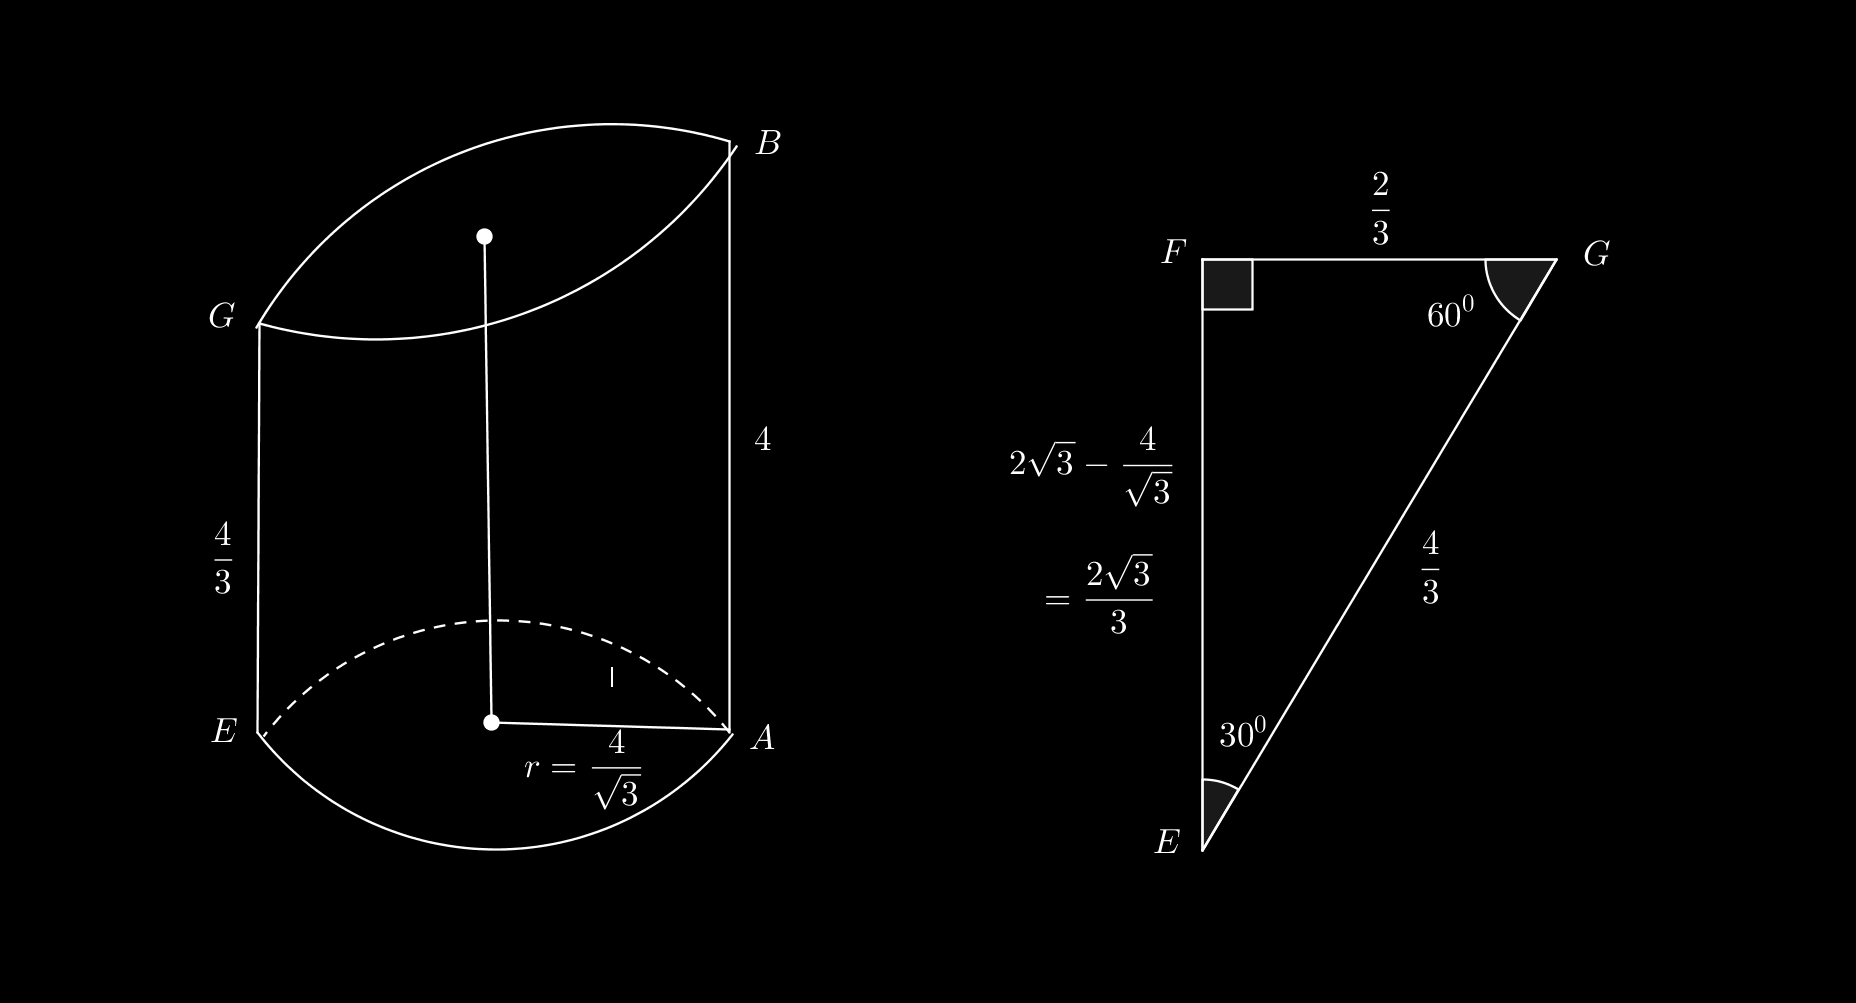 Solução: Colocando as informações na figura abaixo: No triângulo ADB, temos que BD = 2, logo cos 0 0 = 2 triângulo acima. = AB 2, AB = 4 e AD = 2, ver Como o diametro do tanque é CD = 6, CA = 4.